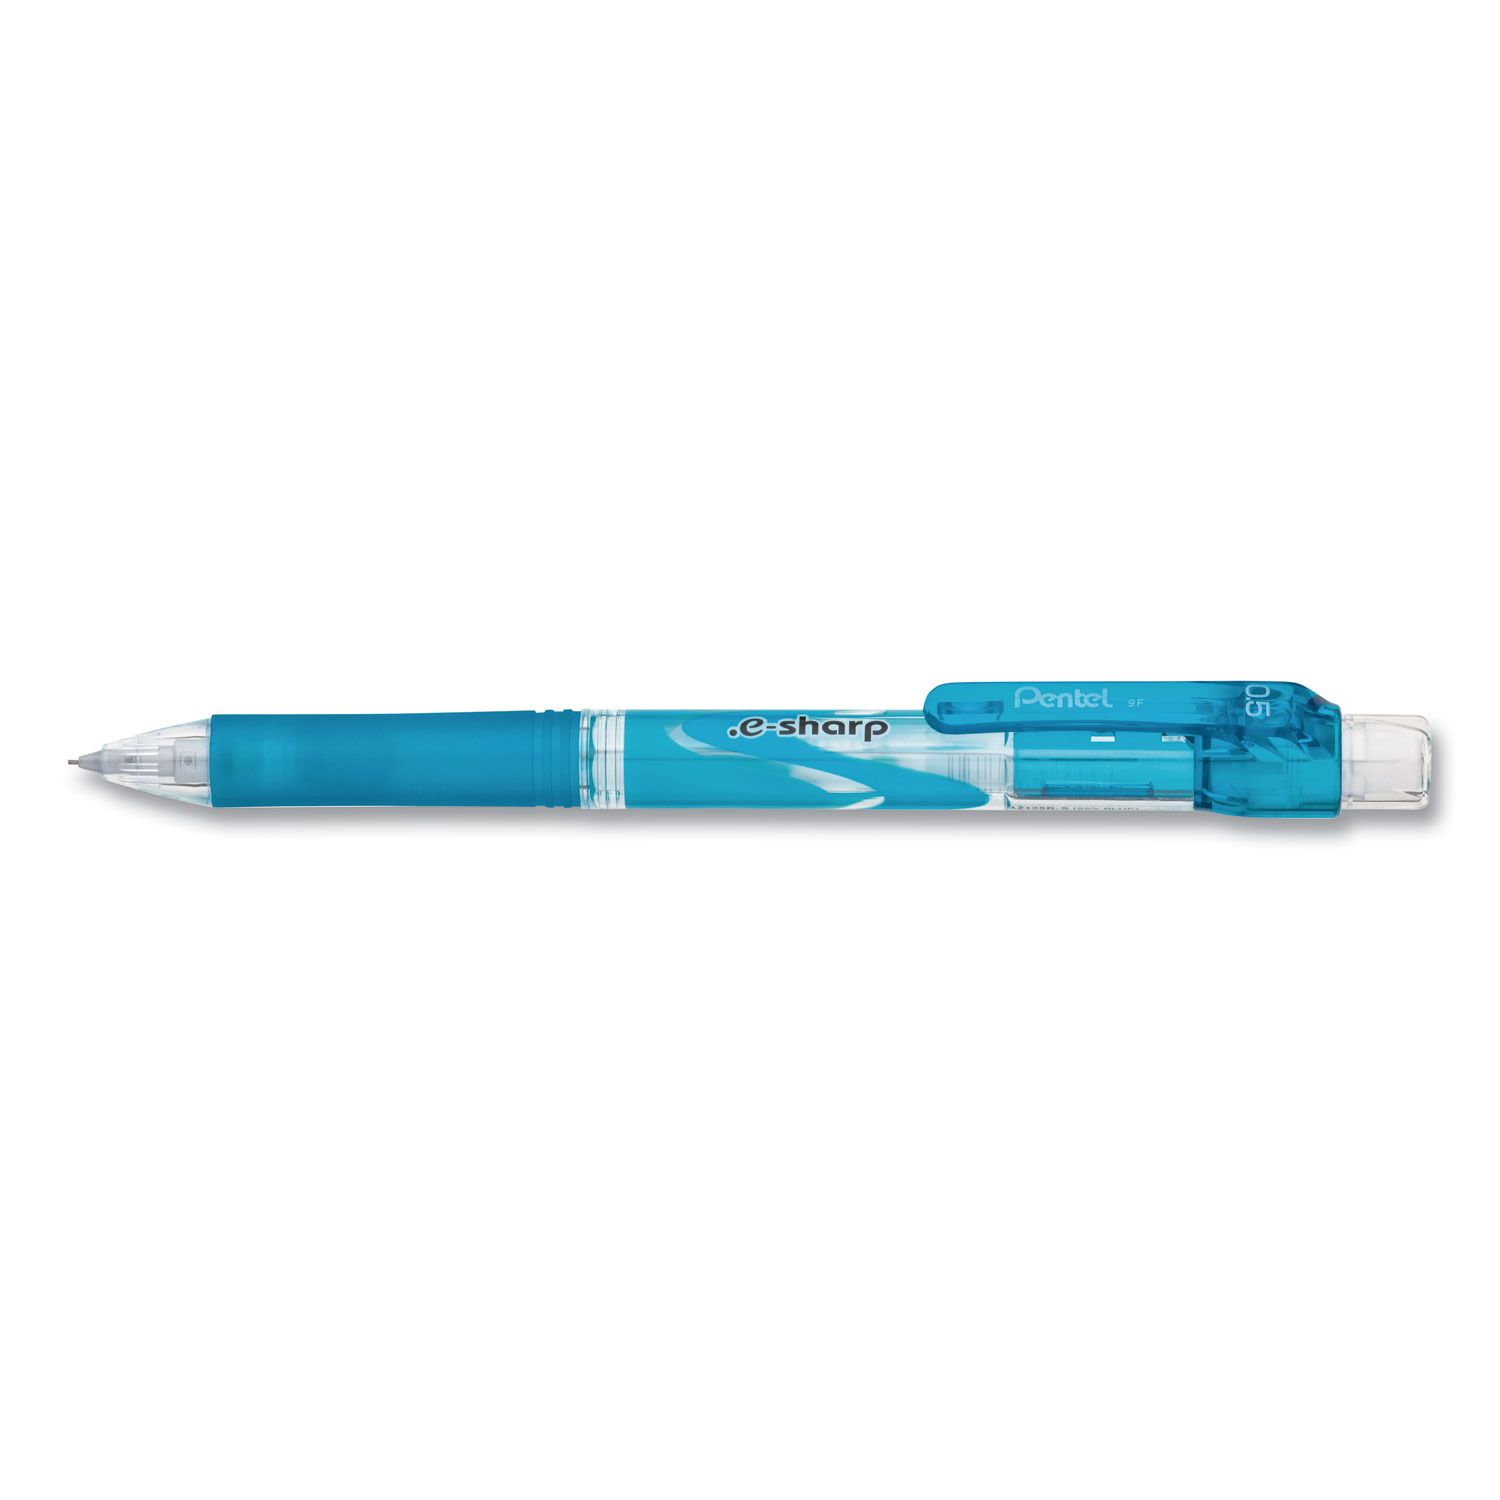  Pentel AZ125S .e-Sharp Mechanical Pencil, 0.5 mm, HB (#2.5), Black Lead, Sky Blue Barrel, Dozen (PENAZ125S) 